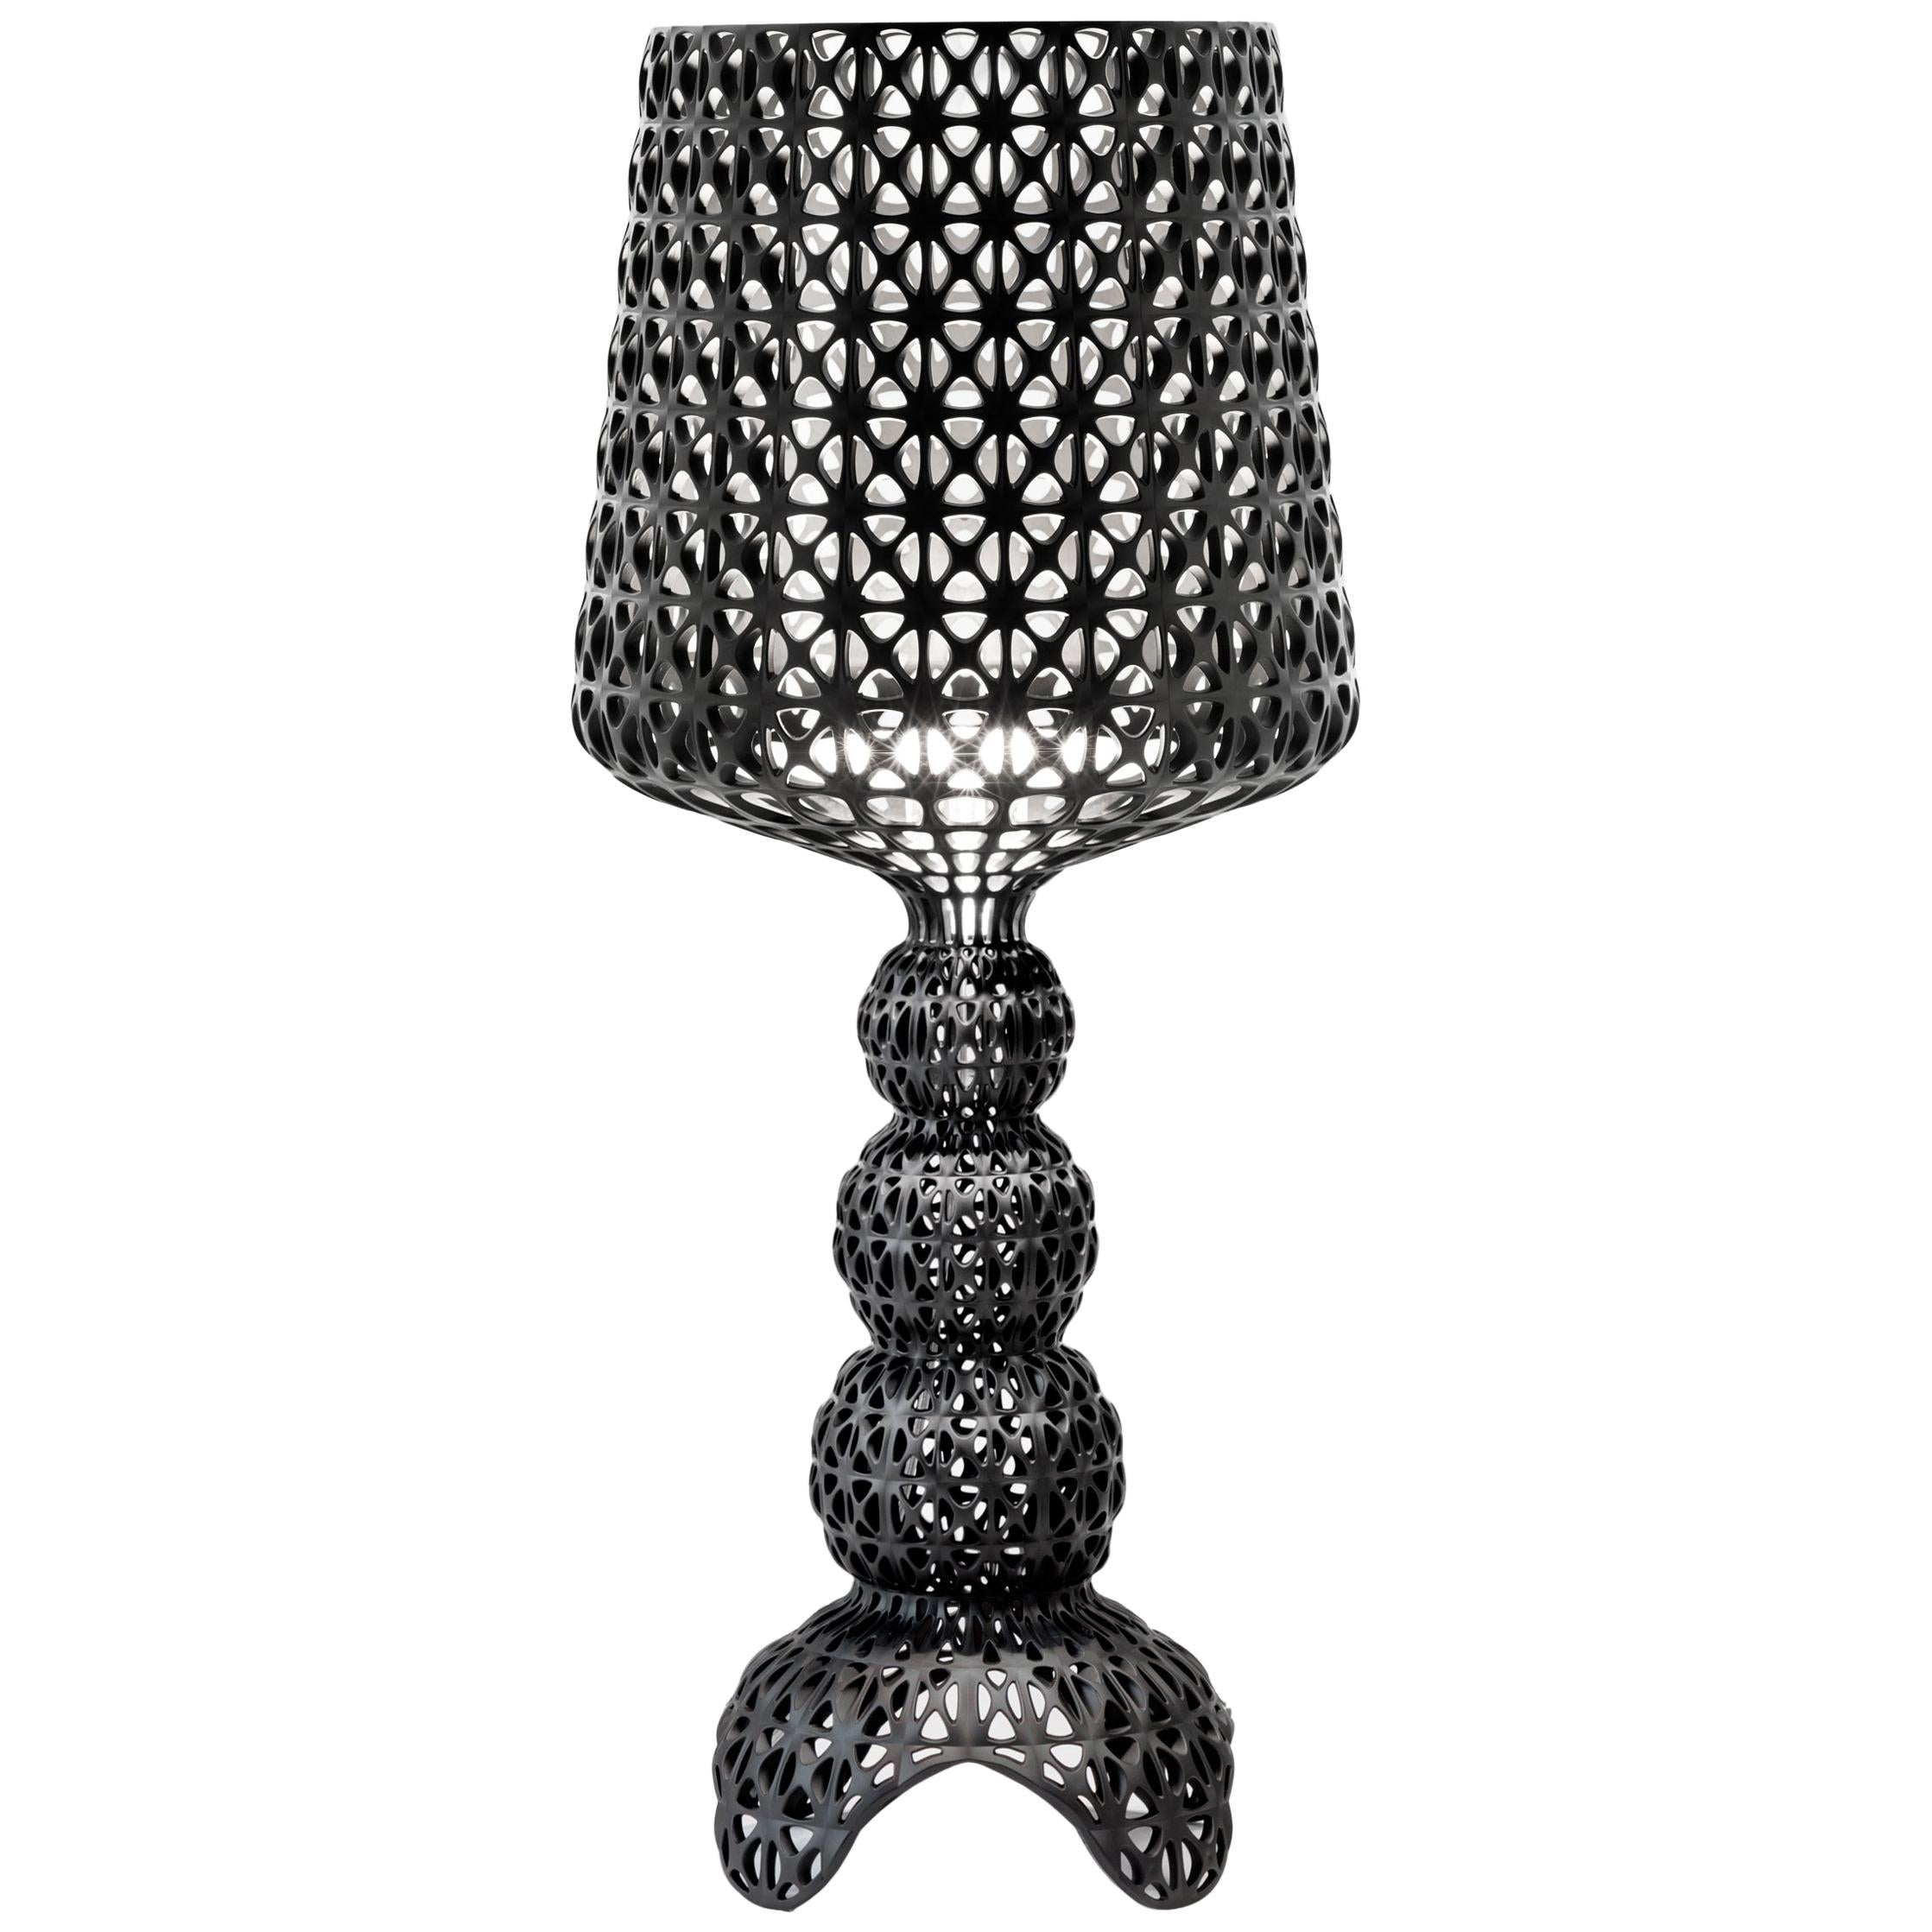 Ferruccio Laviani Table Lamps